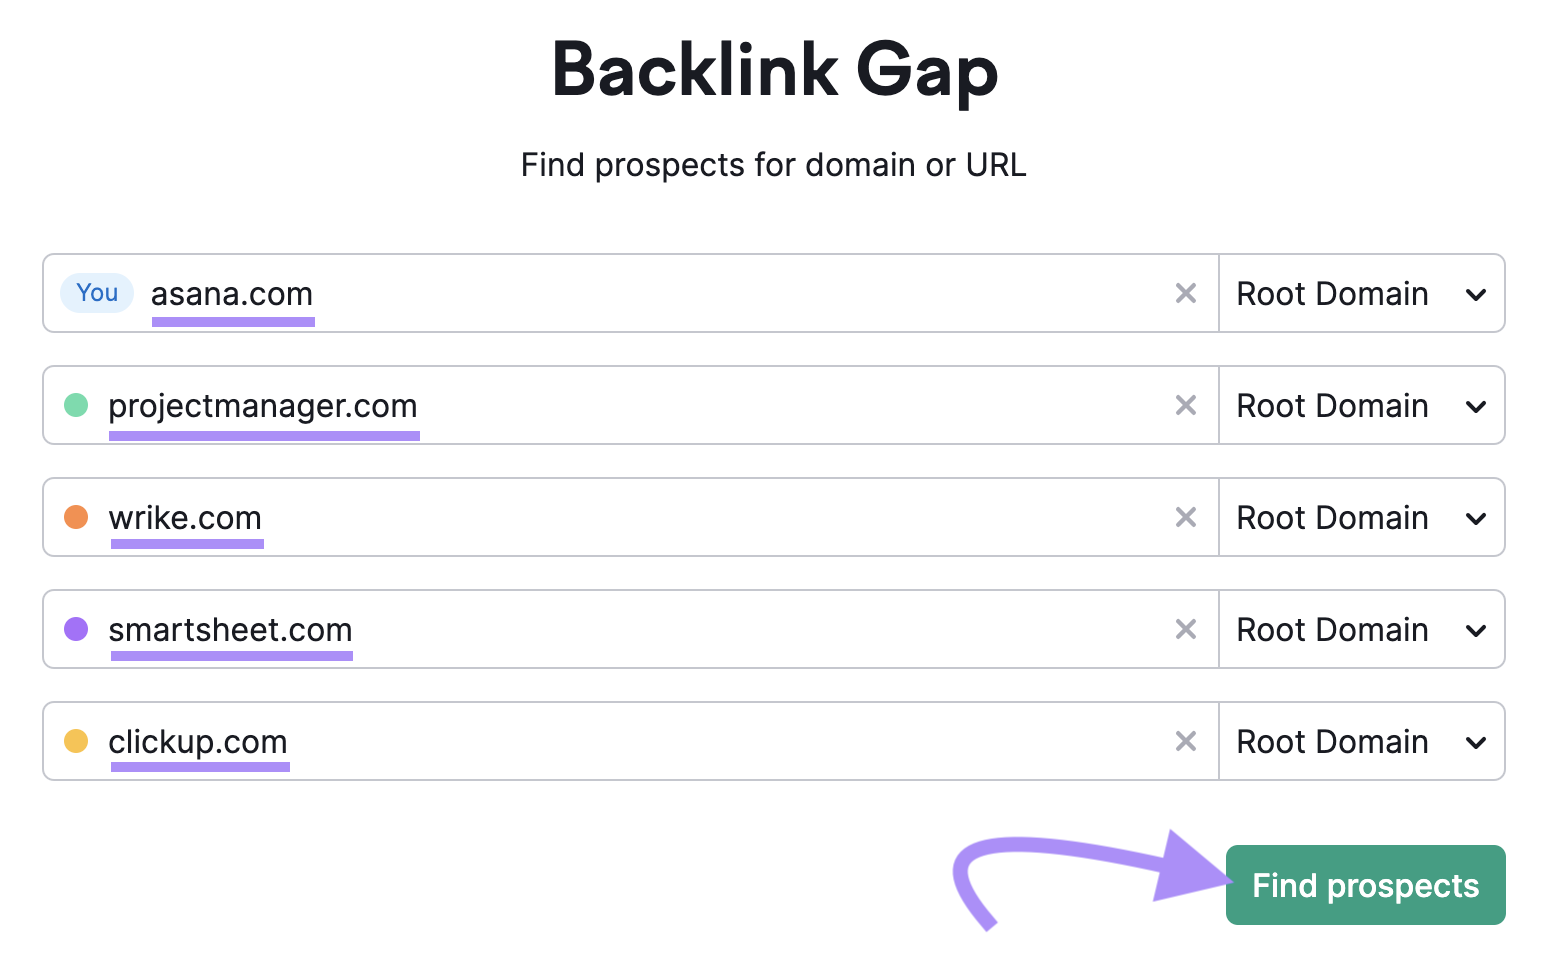 Backlink Gap tool search bar